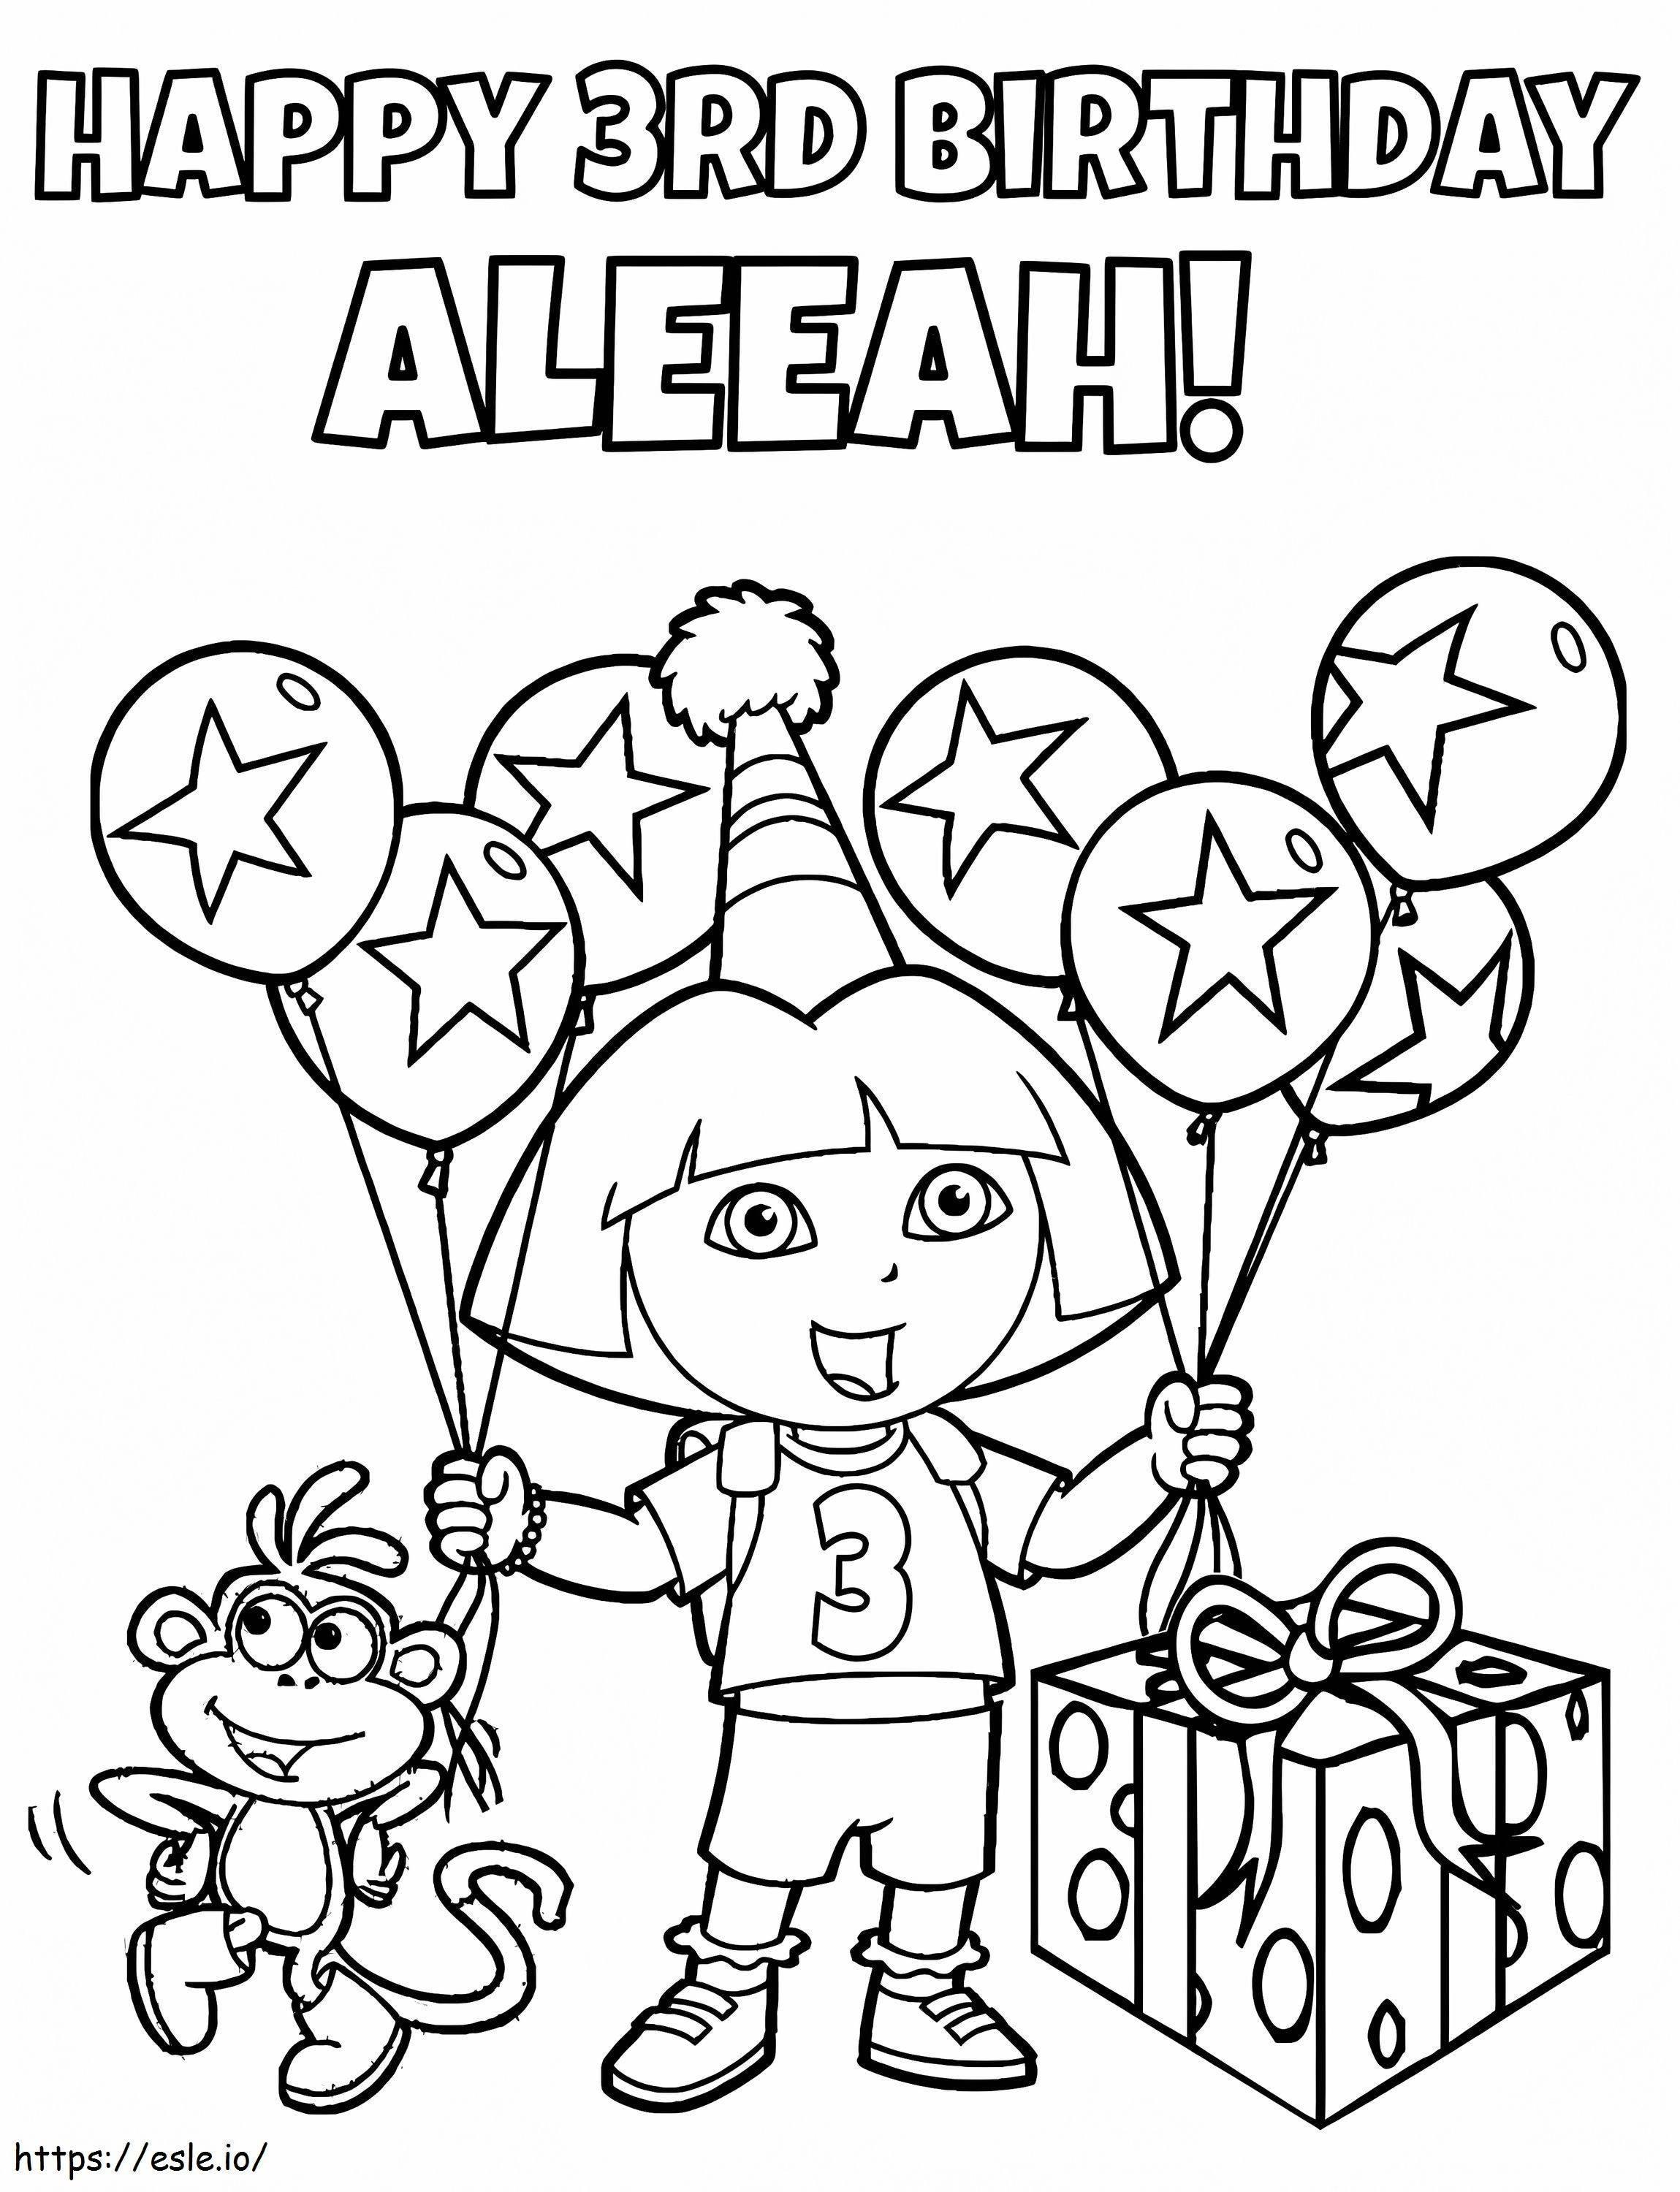 Dora no aniversário para colorir